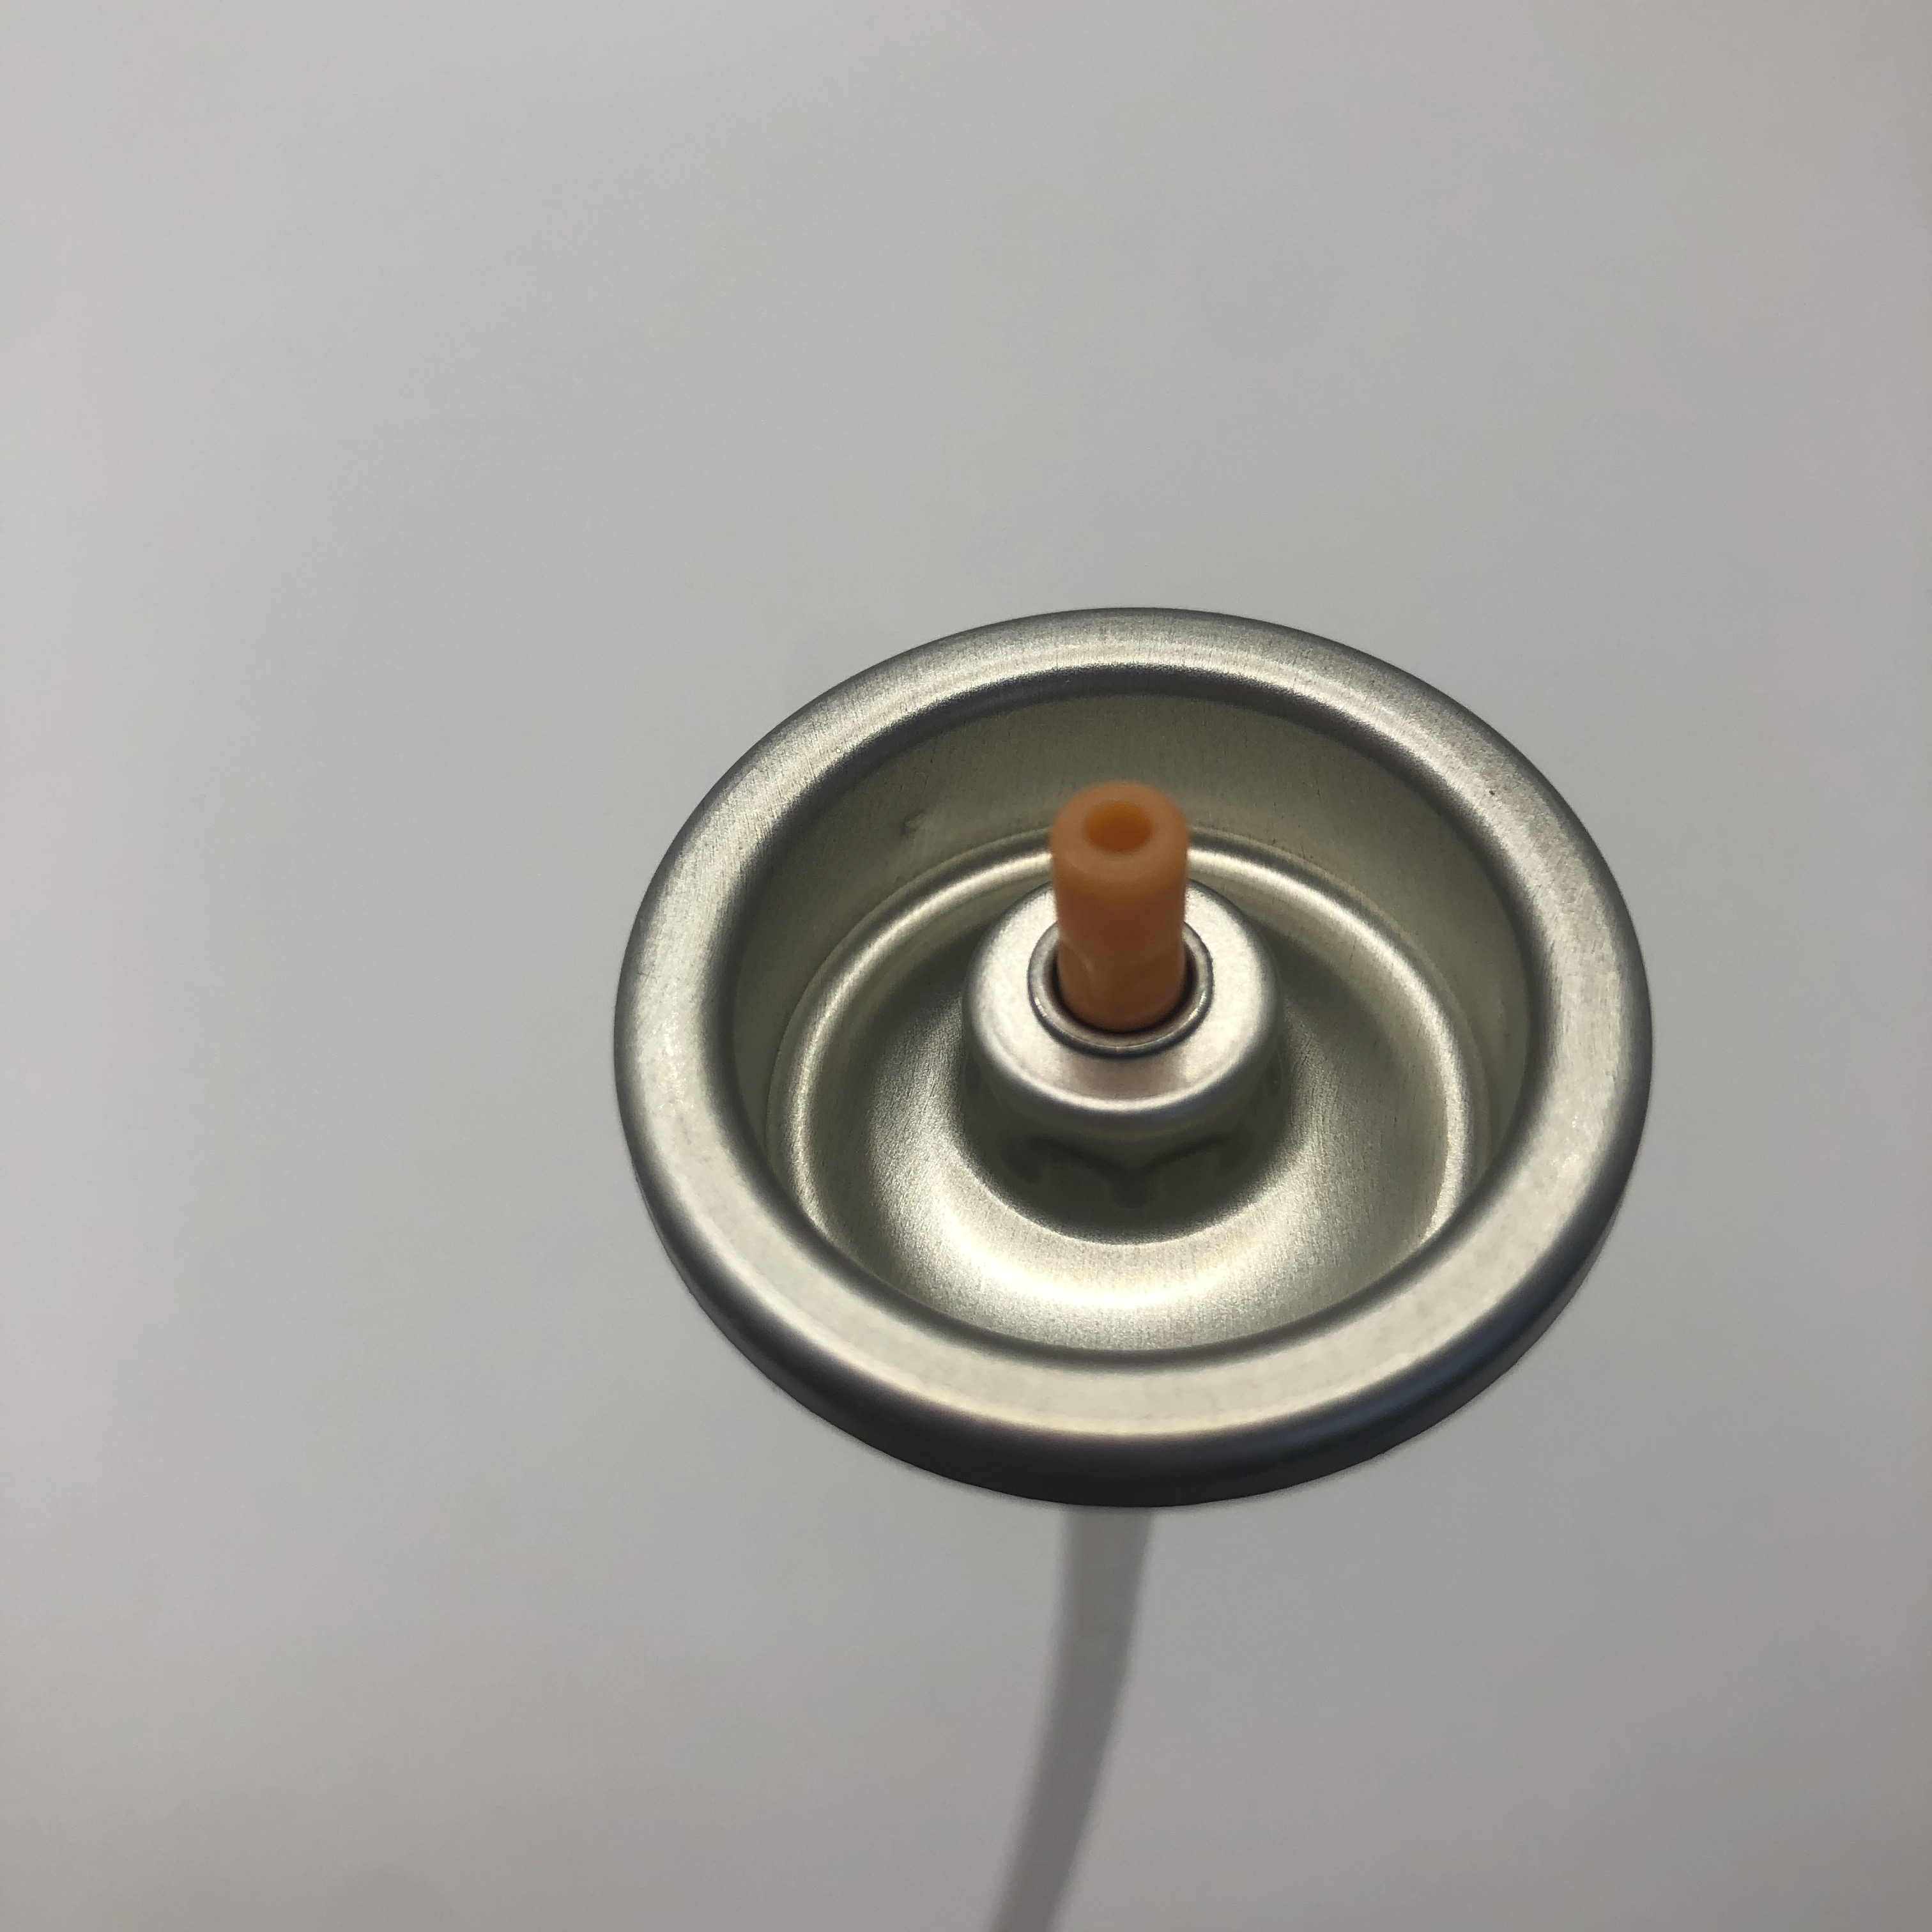 Válvula de pulverização de tinta versátil para projetos de bricolage válvula de aço inoxidável com vazão ajustável e vedações de buna